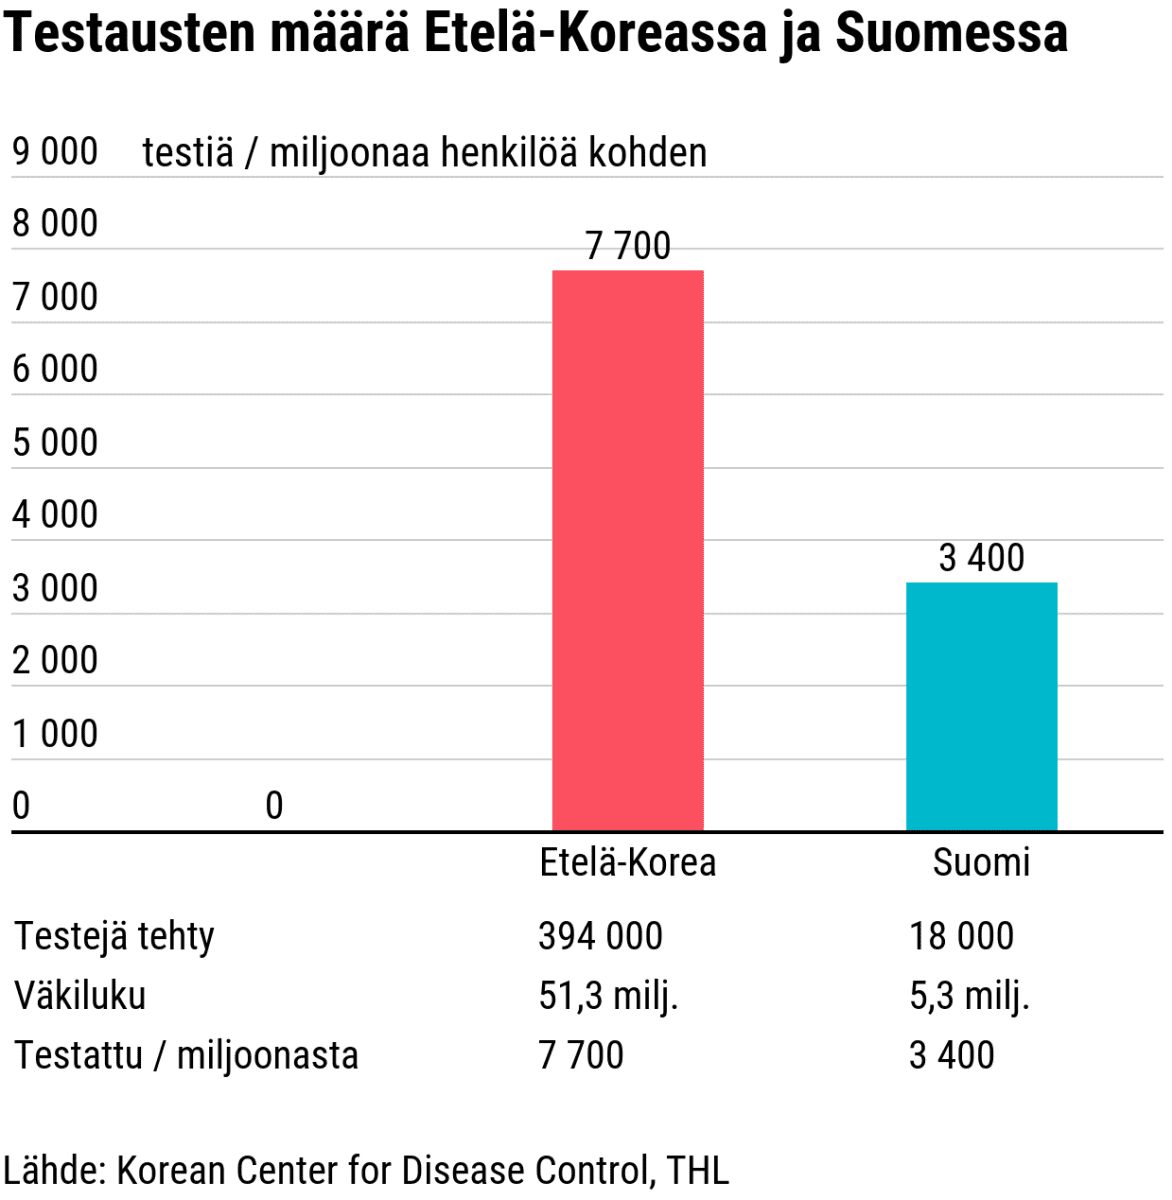 Tilastografiikka koronatestausten määrästä Etelä-Koreassa ja Suomessa.